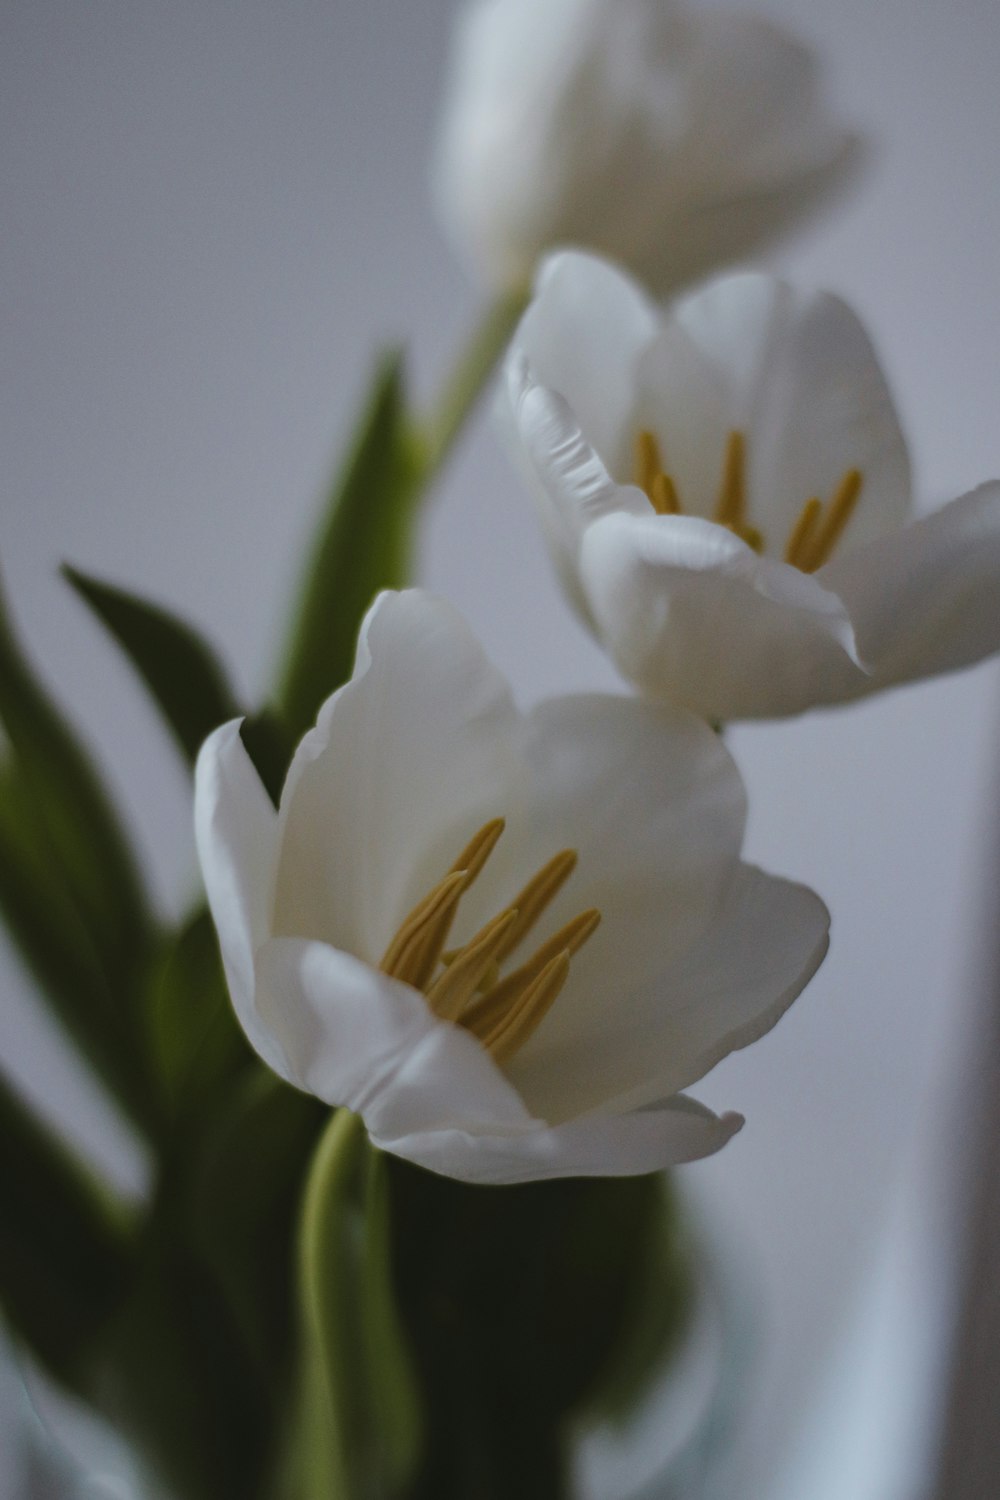 white flower in tilt shift lens